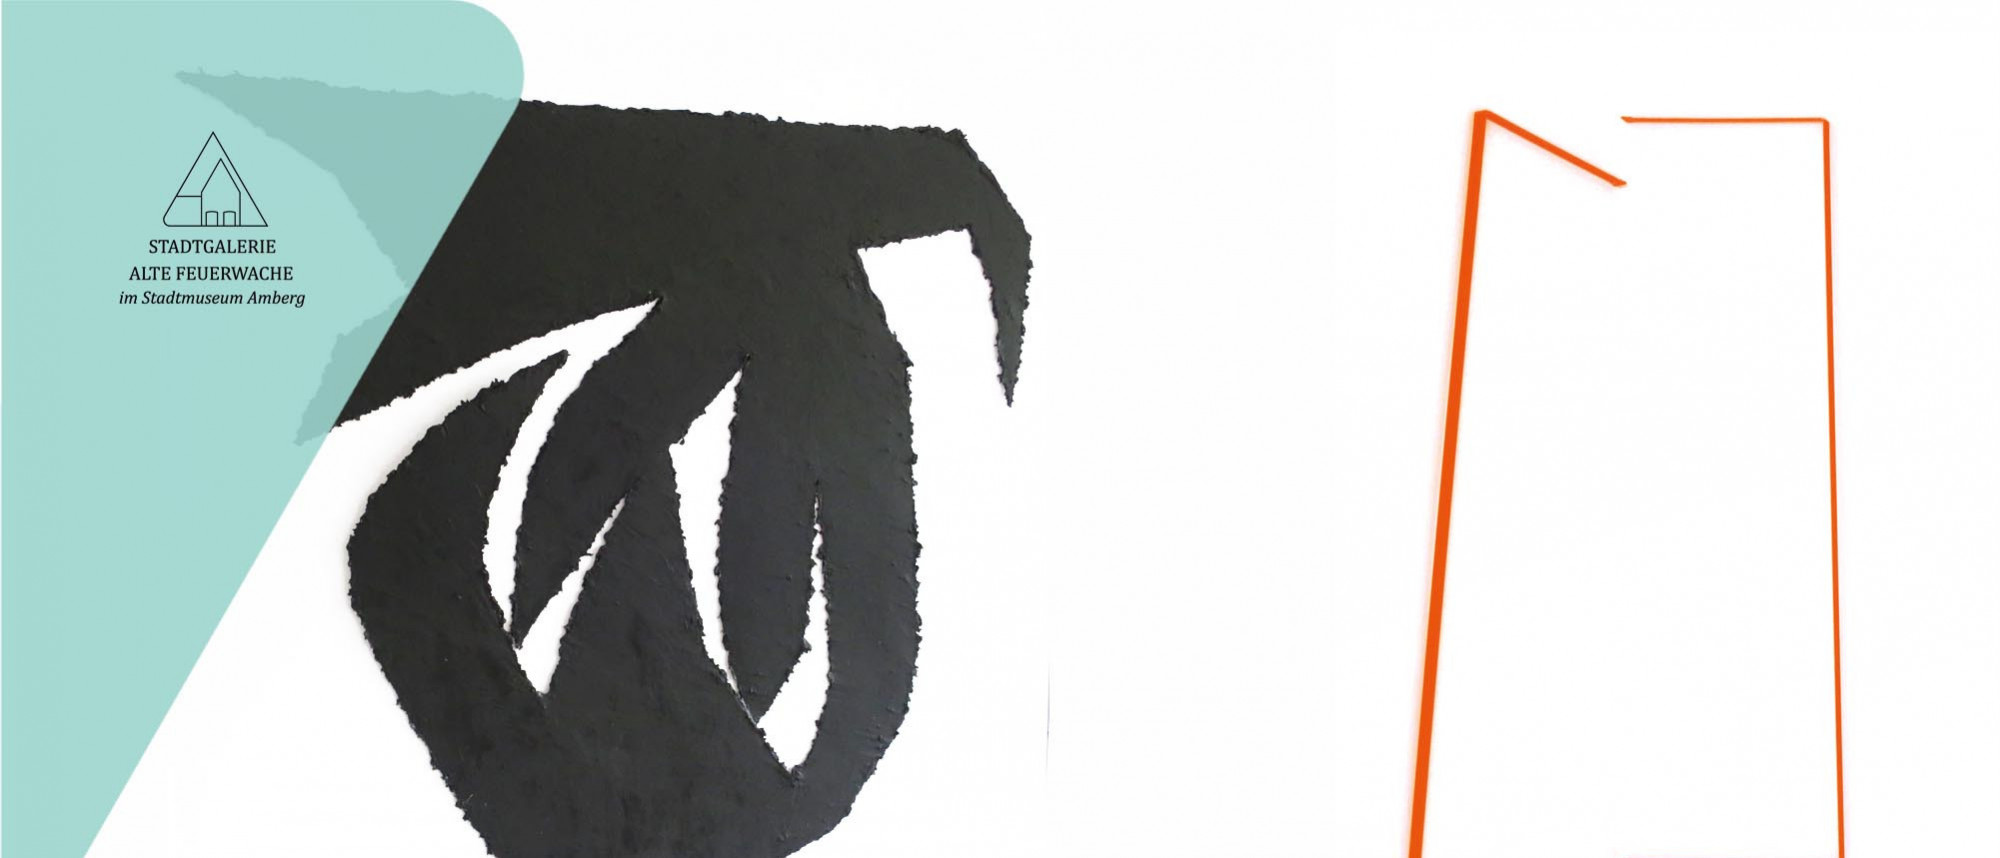 Details von zwei modernen Kunstwerken. Schwarze, durchbrochene Rundform links und zwei orange Linien rechts vor weißem Grund.